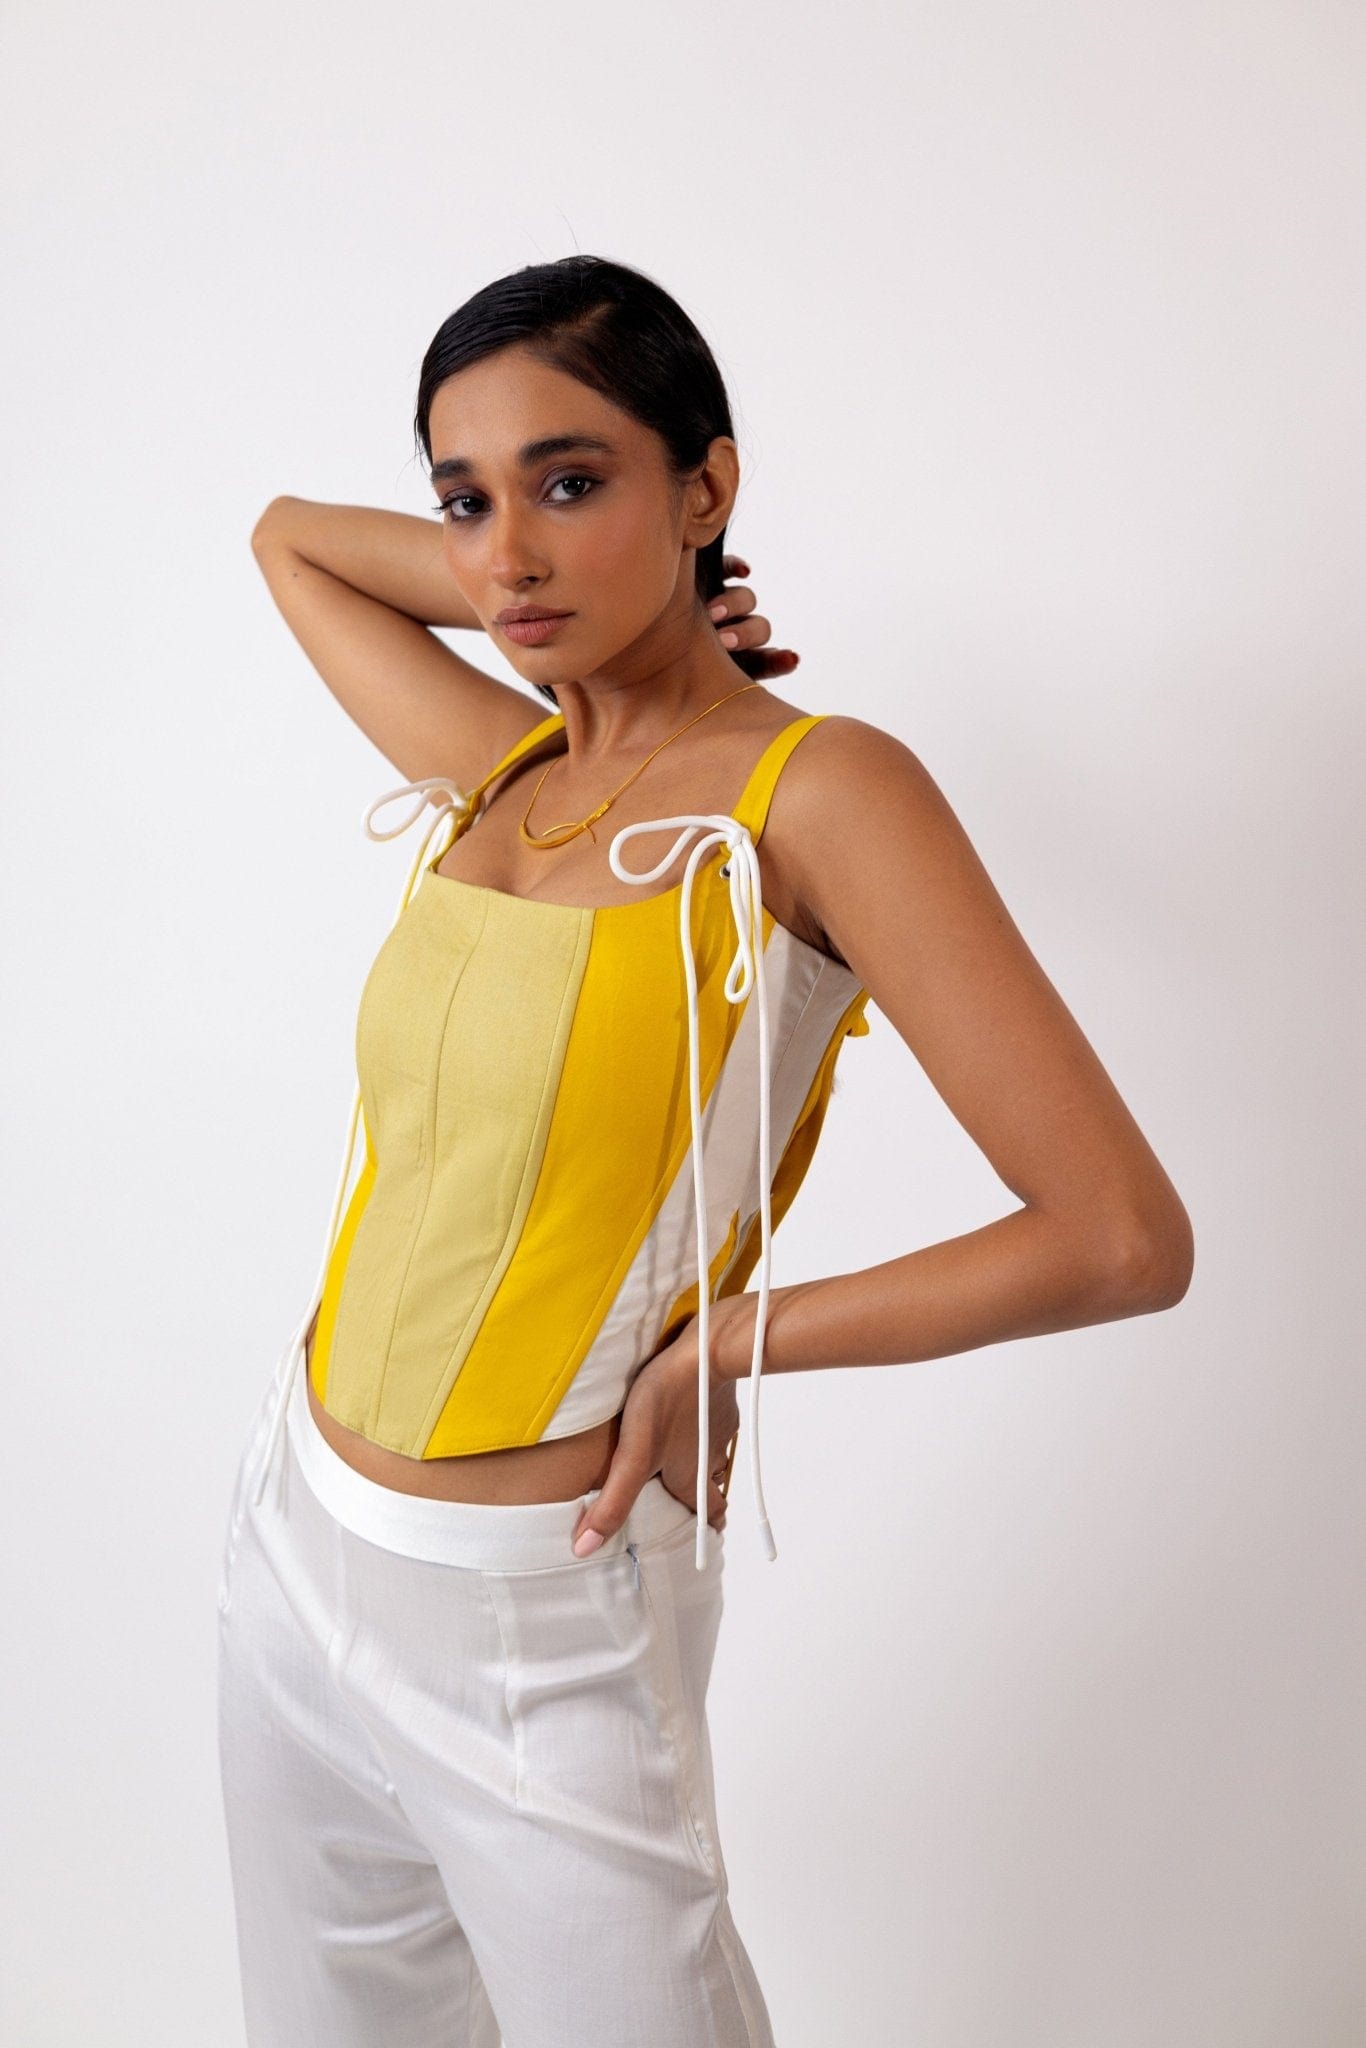 Osé Studios Clothing Citrus breeze corset